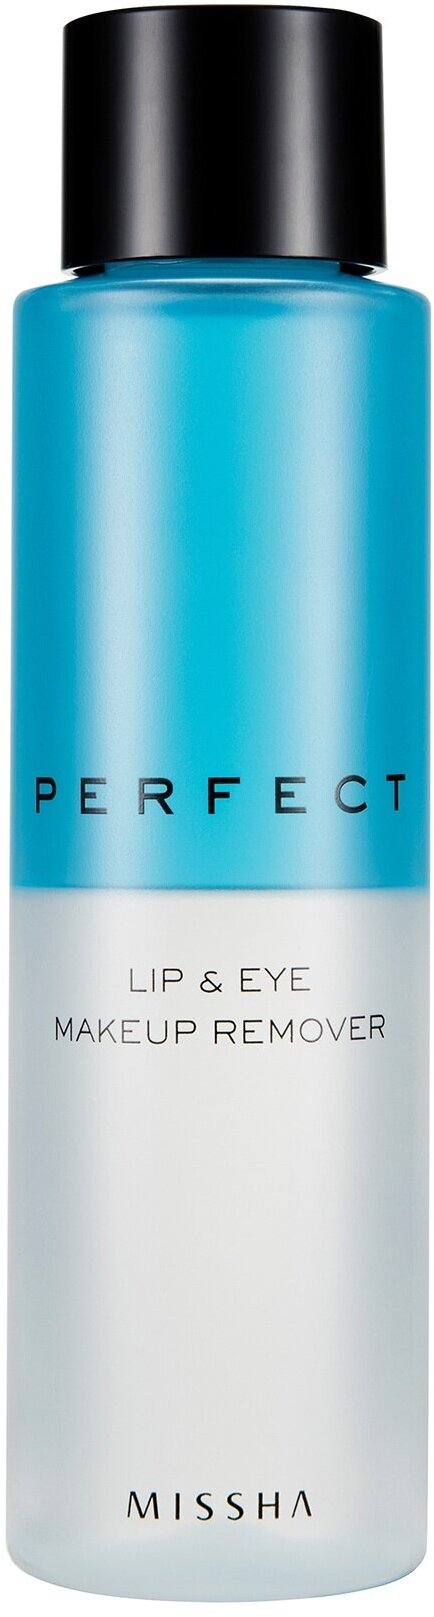 MISSHA Perfect Lip&Eye Make-up Remover Двухфазное средство для снятия макияжа с глаз и губ, 155 мл